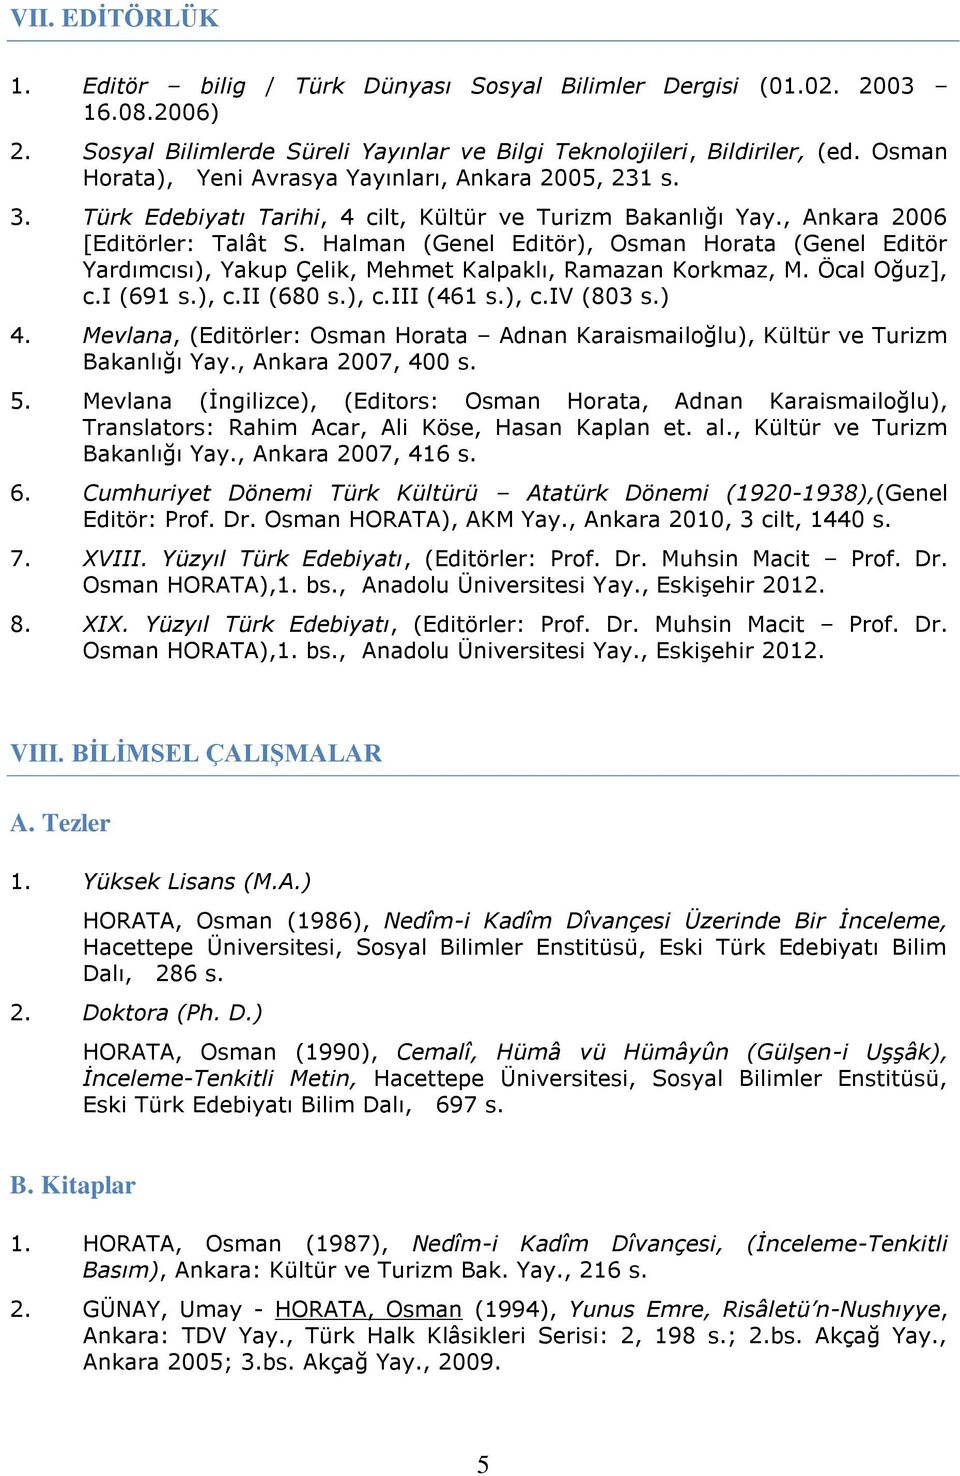 Halman (Genel Editör), Osman Horata (Genel Editör Yardımcısı), Yakup Çelik, Mehmet Kalpaklı, Ramazan Korkmaz, M. Öcal Oğuz], c.i (691 s.), c.ii (680 s.), c.iii (461 s.), c.iv (803 s.) 4.